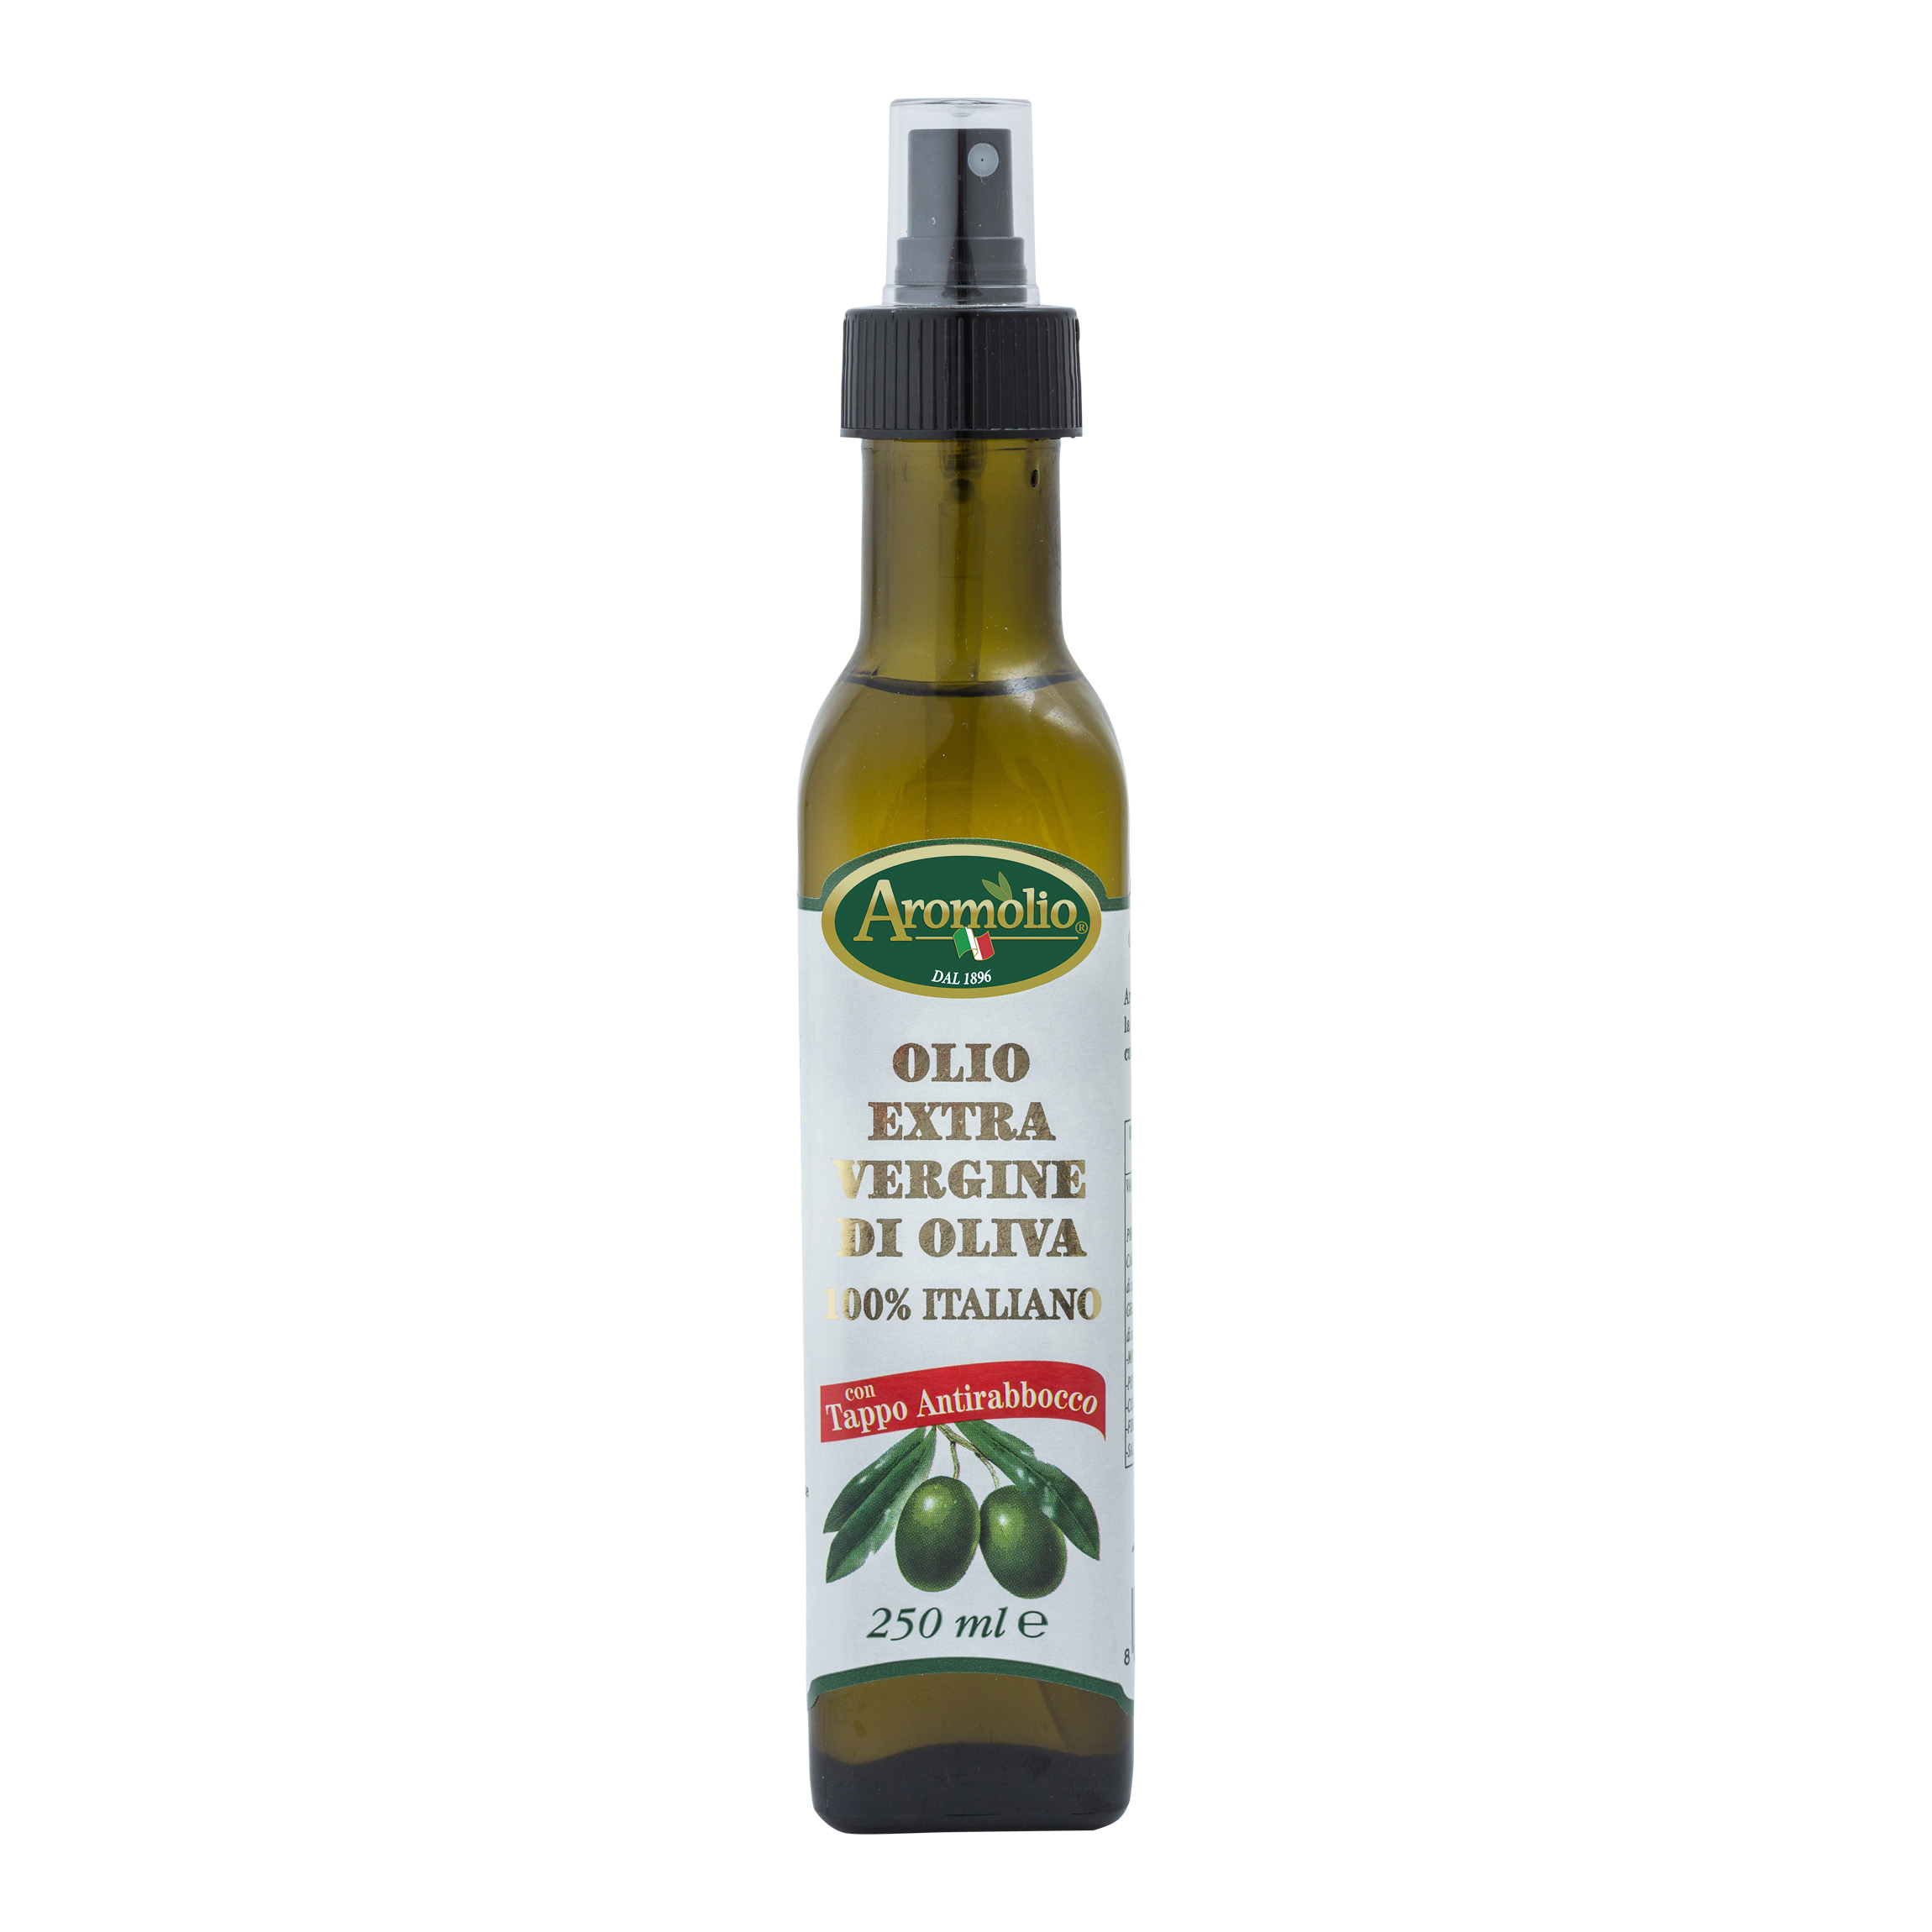 Olio extra vergine di oliva 100% italiano, spray - Aromolio